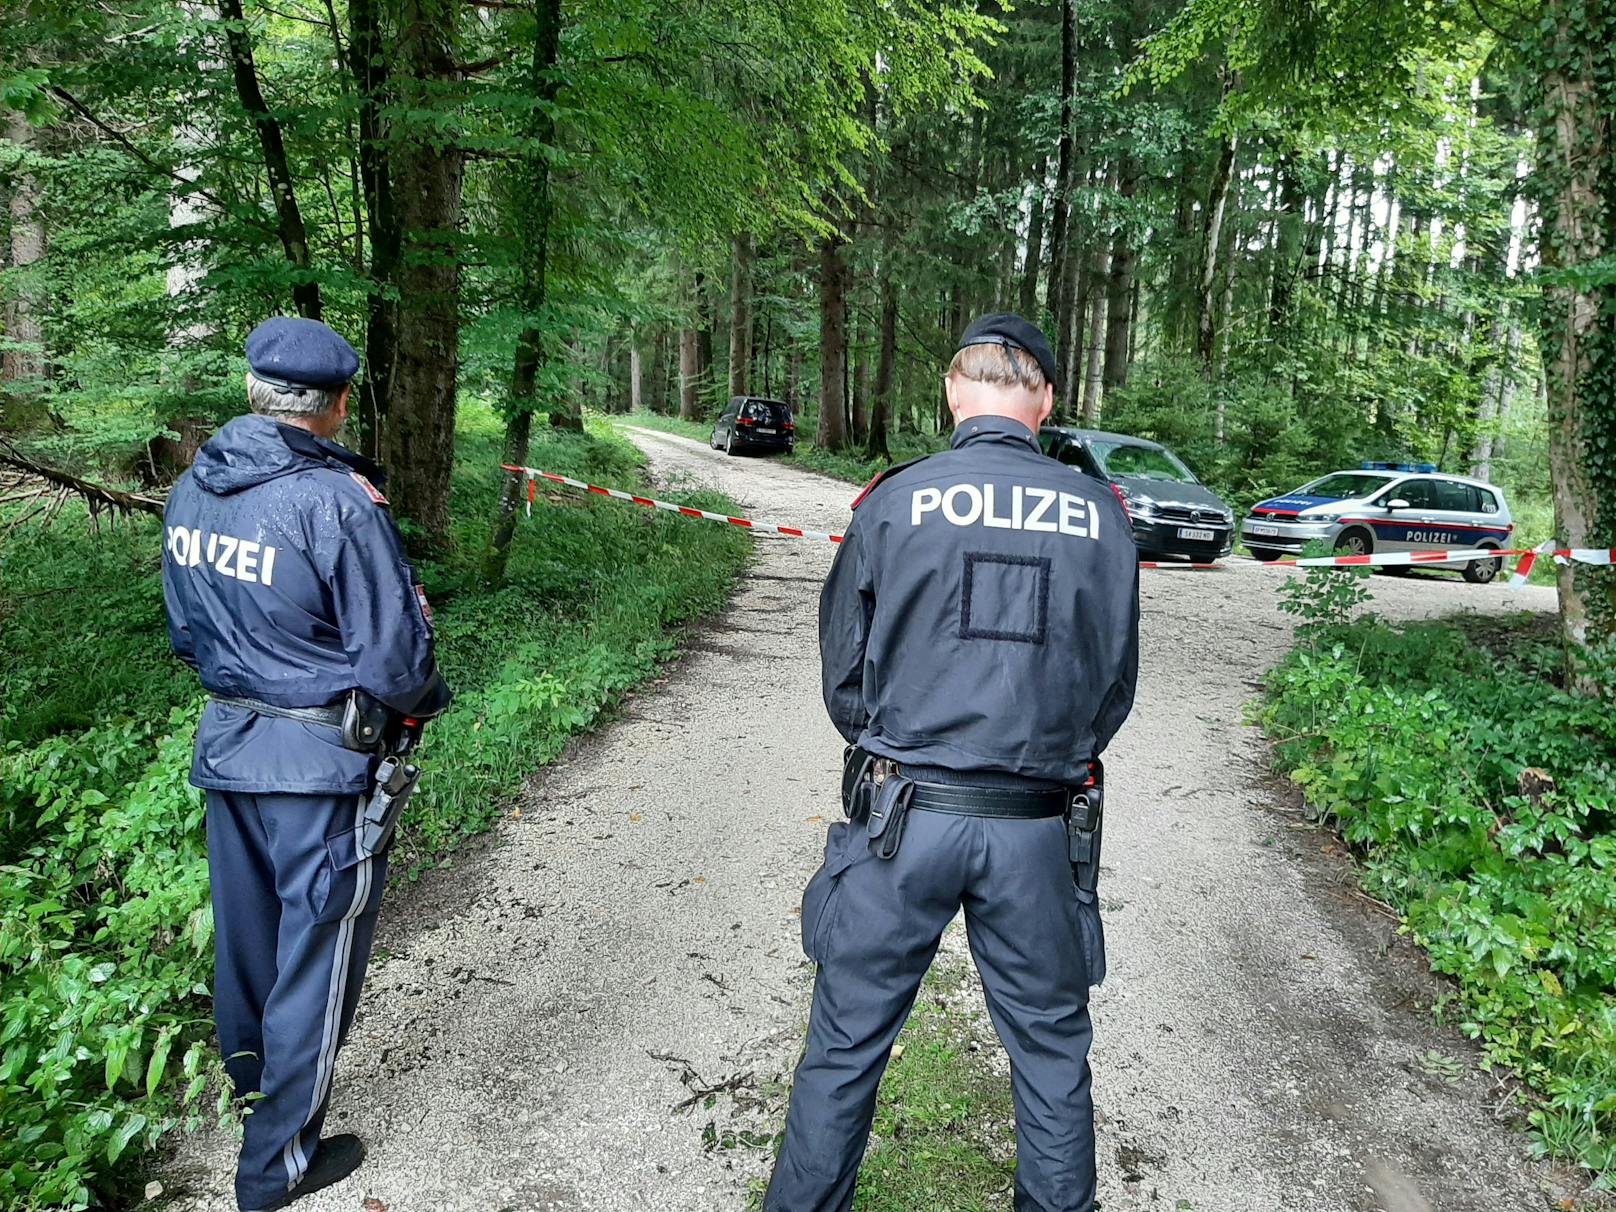 In einem Waldstück bei Großgmain am Salzburger Untersberg wurde am 28. August 2021 <a target="_blank" href="https://www.heute.at/g/polizeihund-entdeckt-frauenleiche-im-wald-100160074">eine Frauenleiche entdeckt</a>.